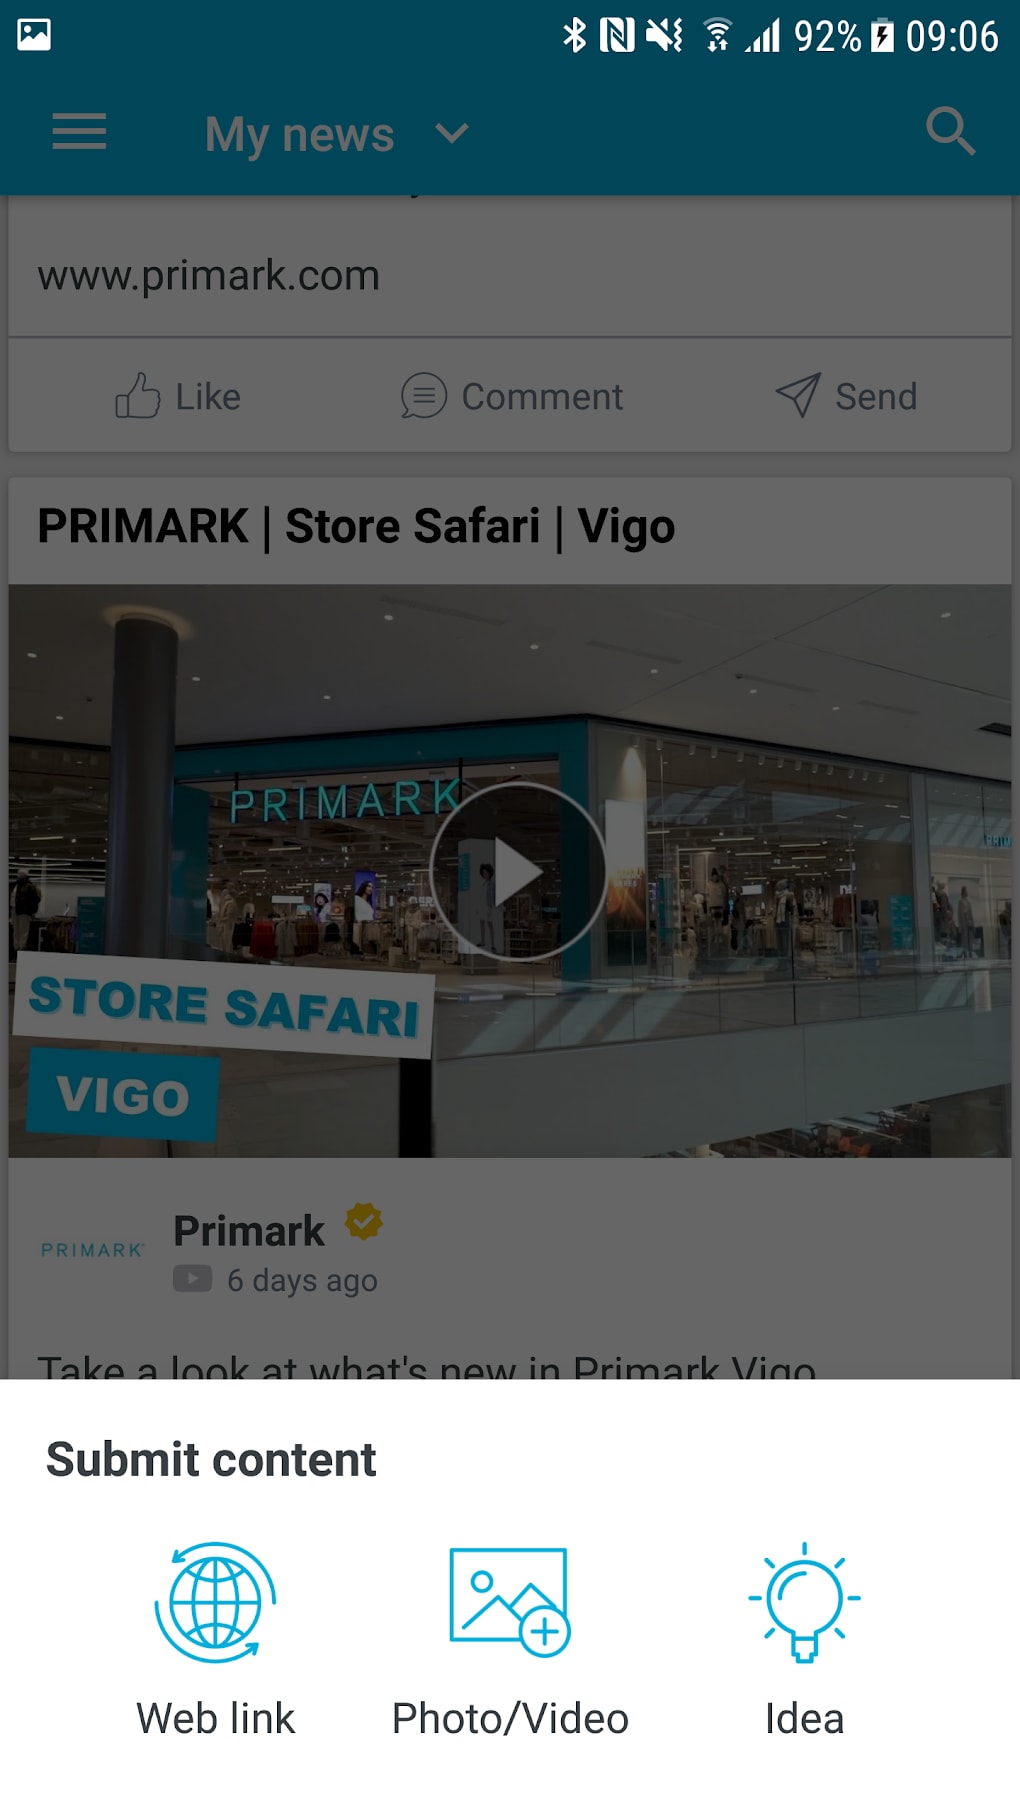 PRIMARK, Store Safari